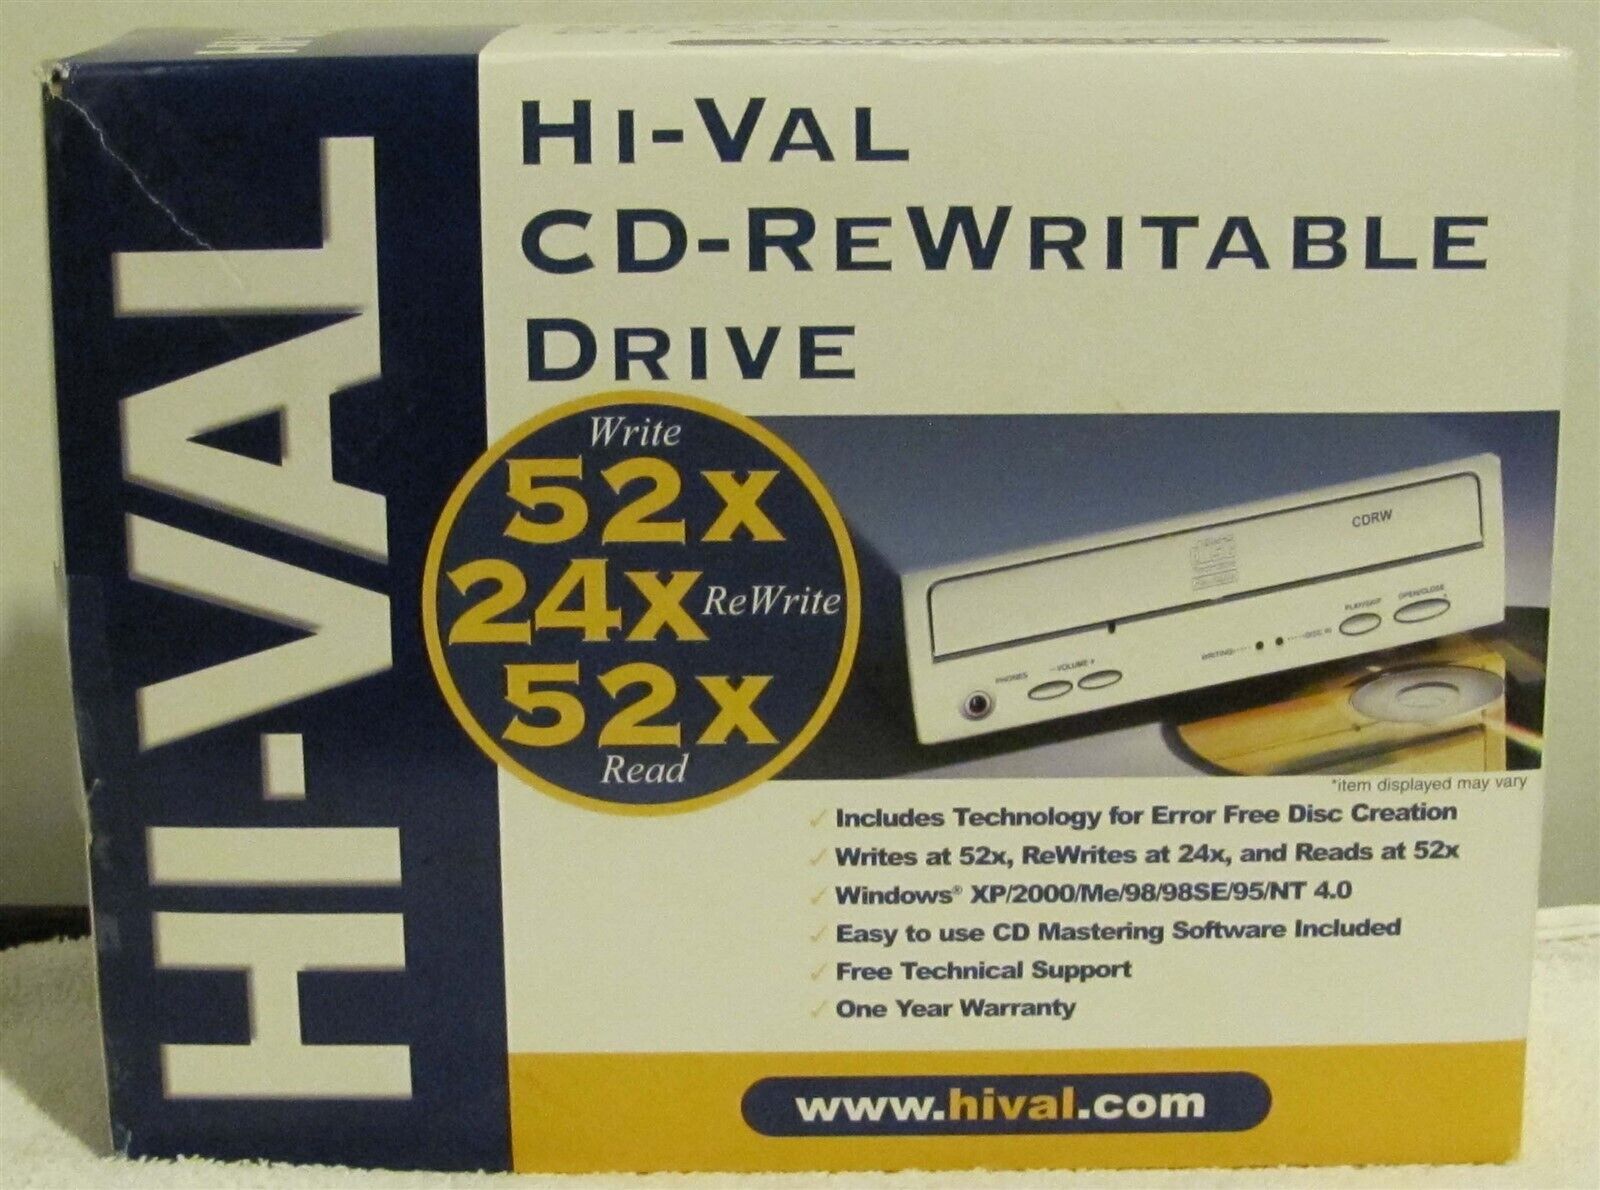 HI-VAL (Model H522452) 52x24x52x CD-RW Internal Drive (New in Box)